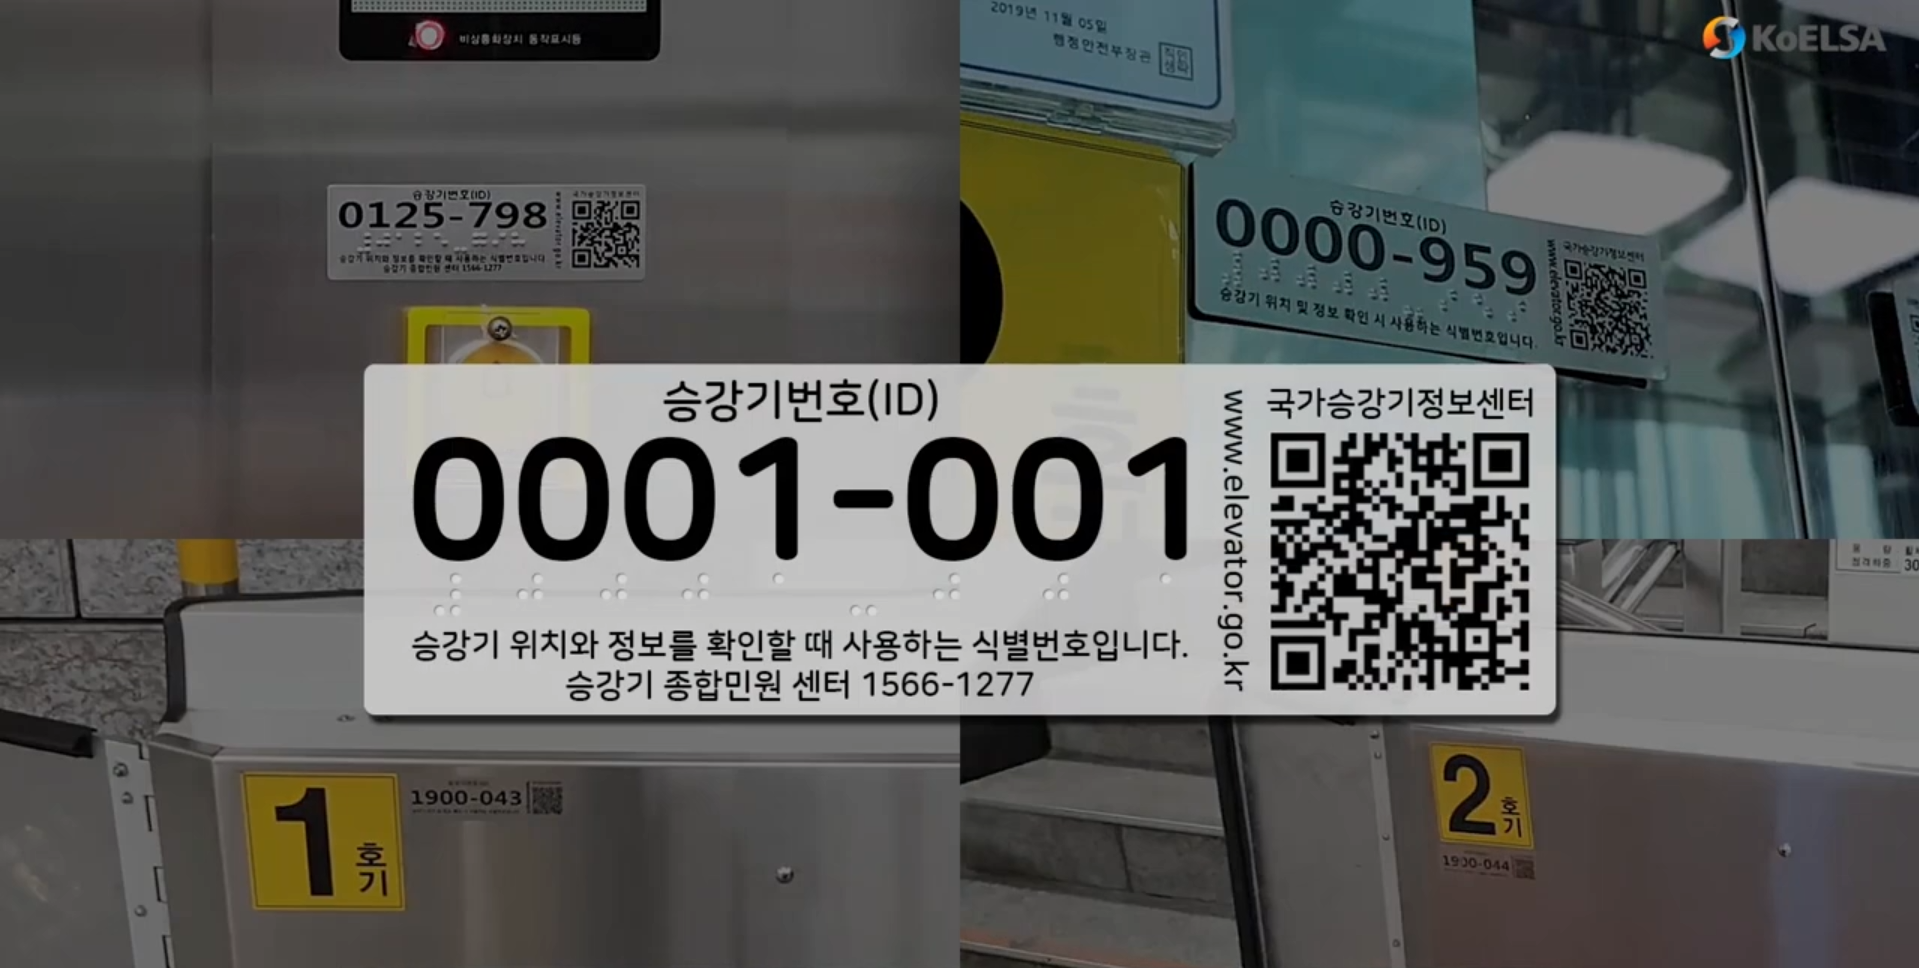 Mã định dang thang máy được sử dụng trong hệ thống quản lý tại Hàn Quốc